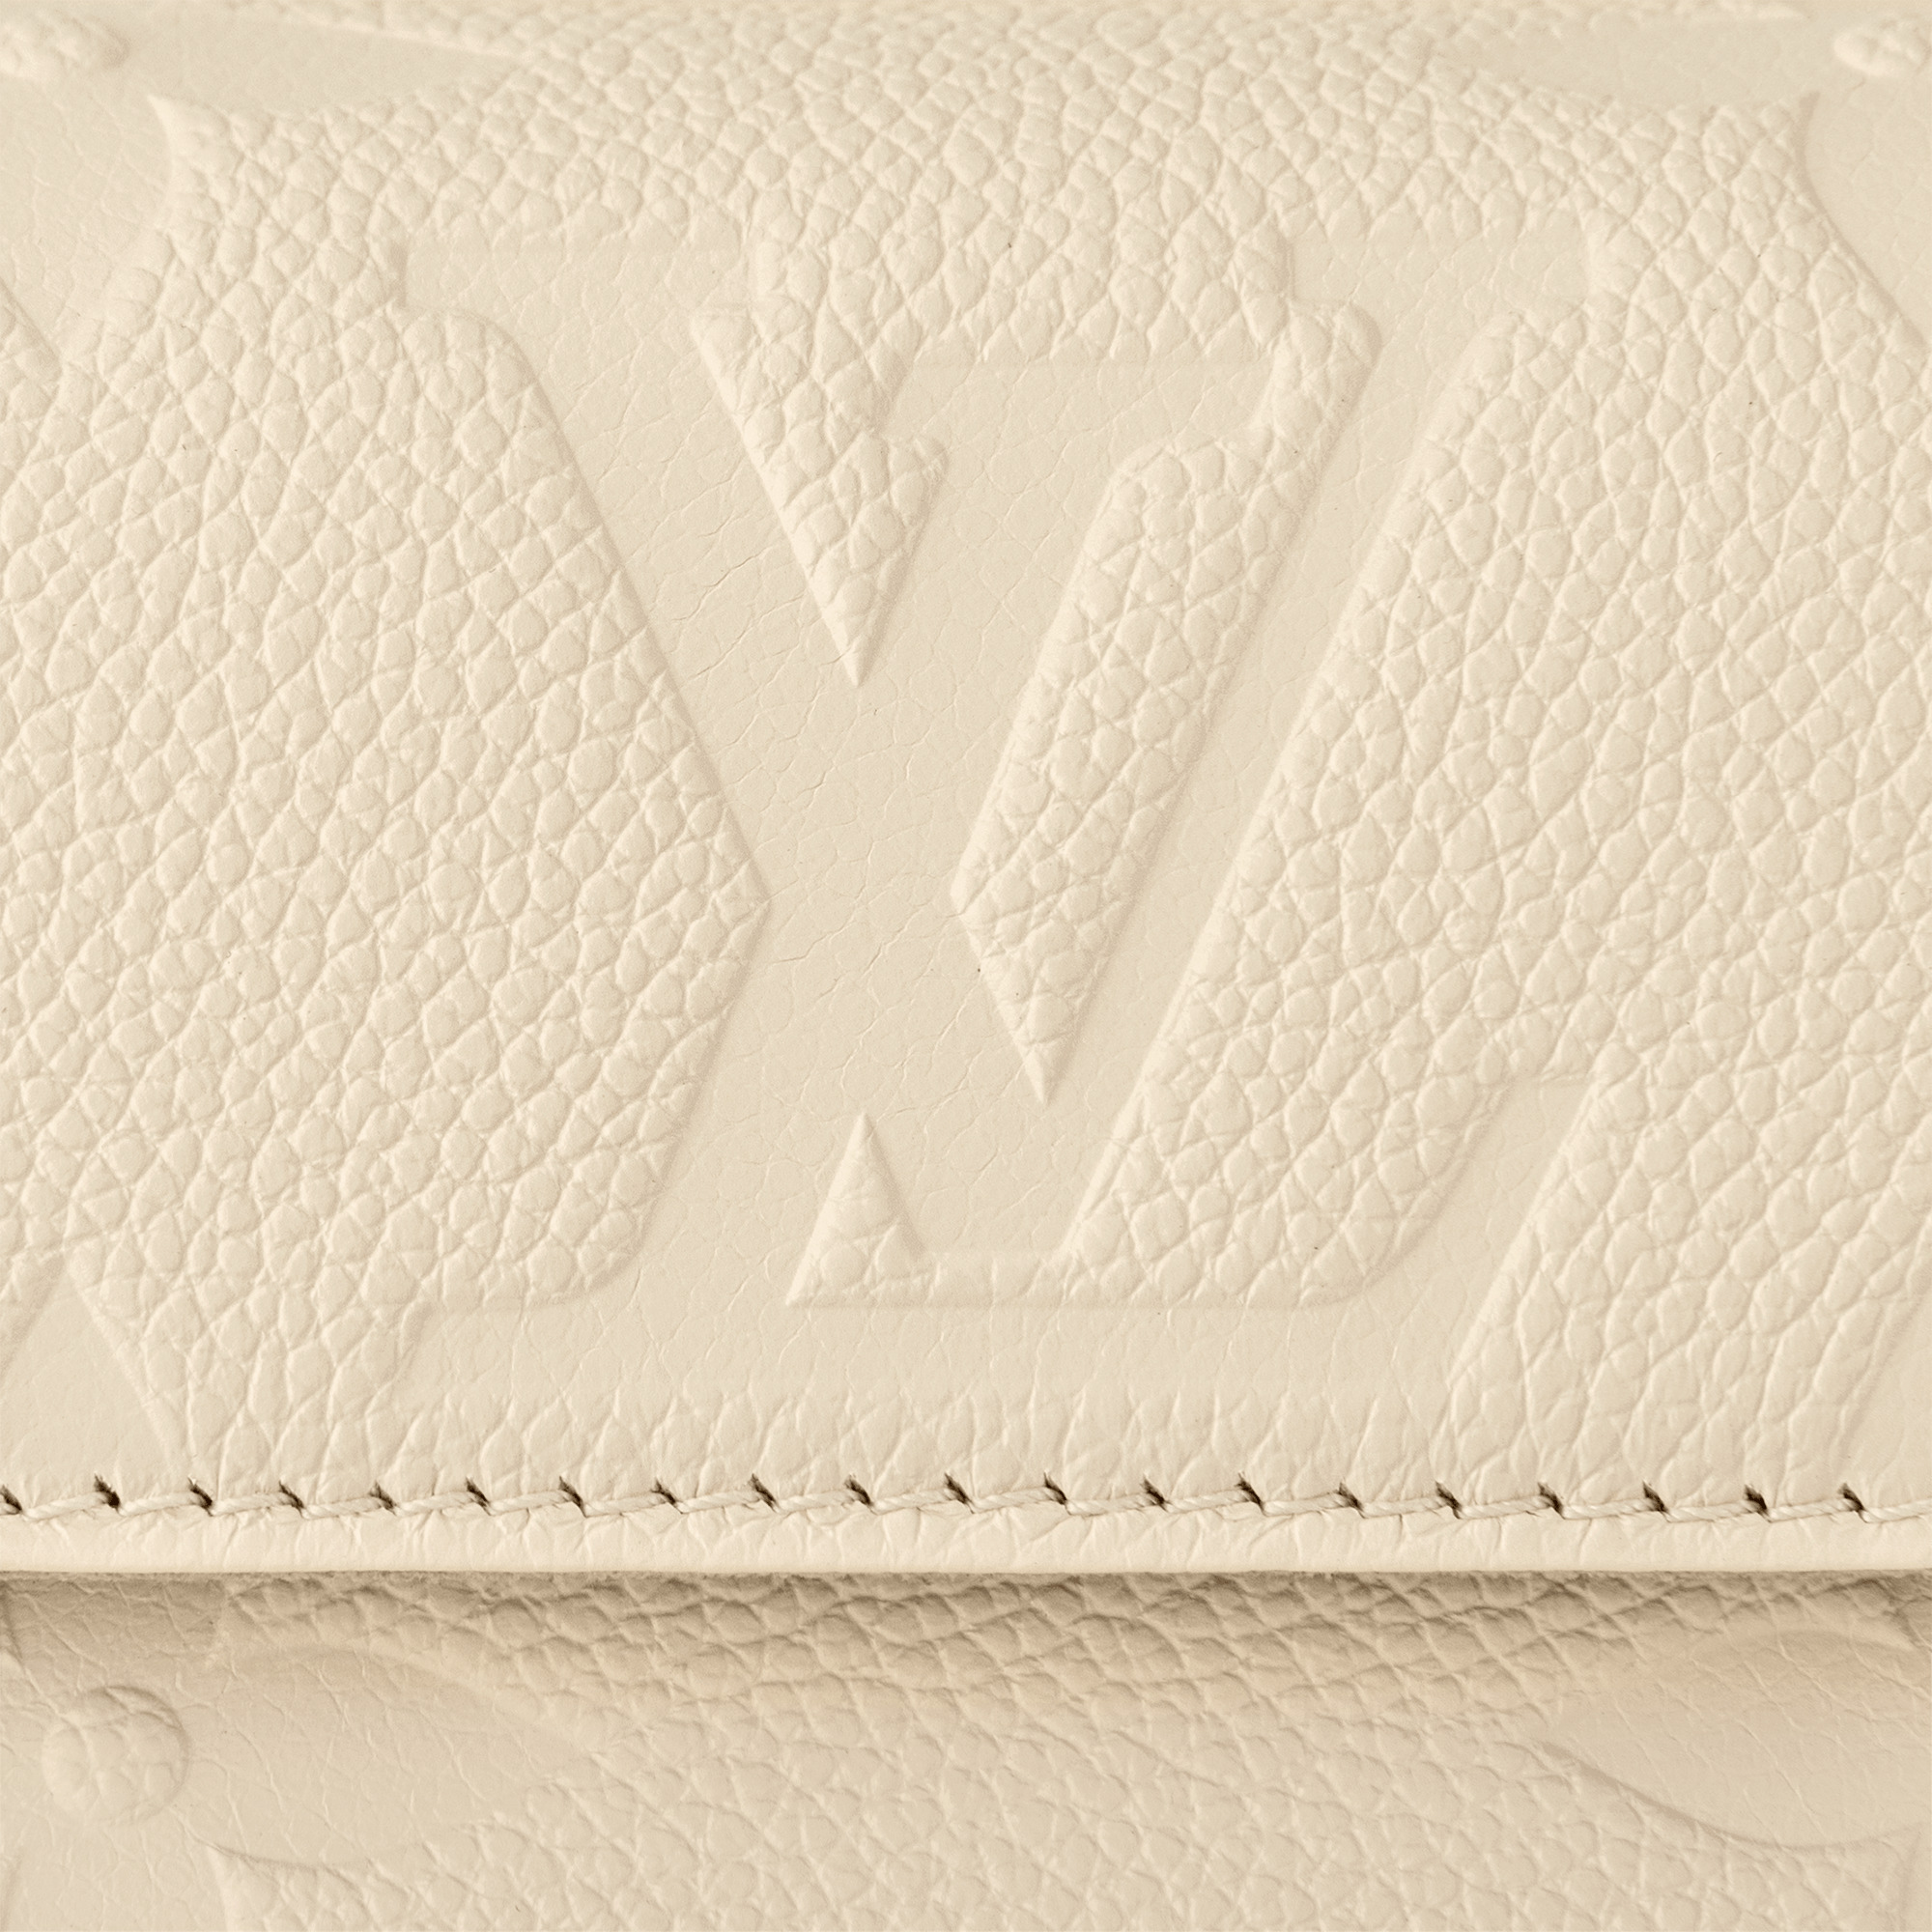 Louis Vuitton Wallet On Chain Ivy Cream in Monogram Empreinte